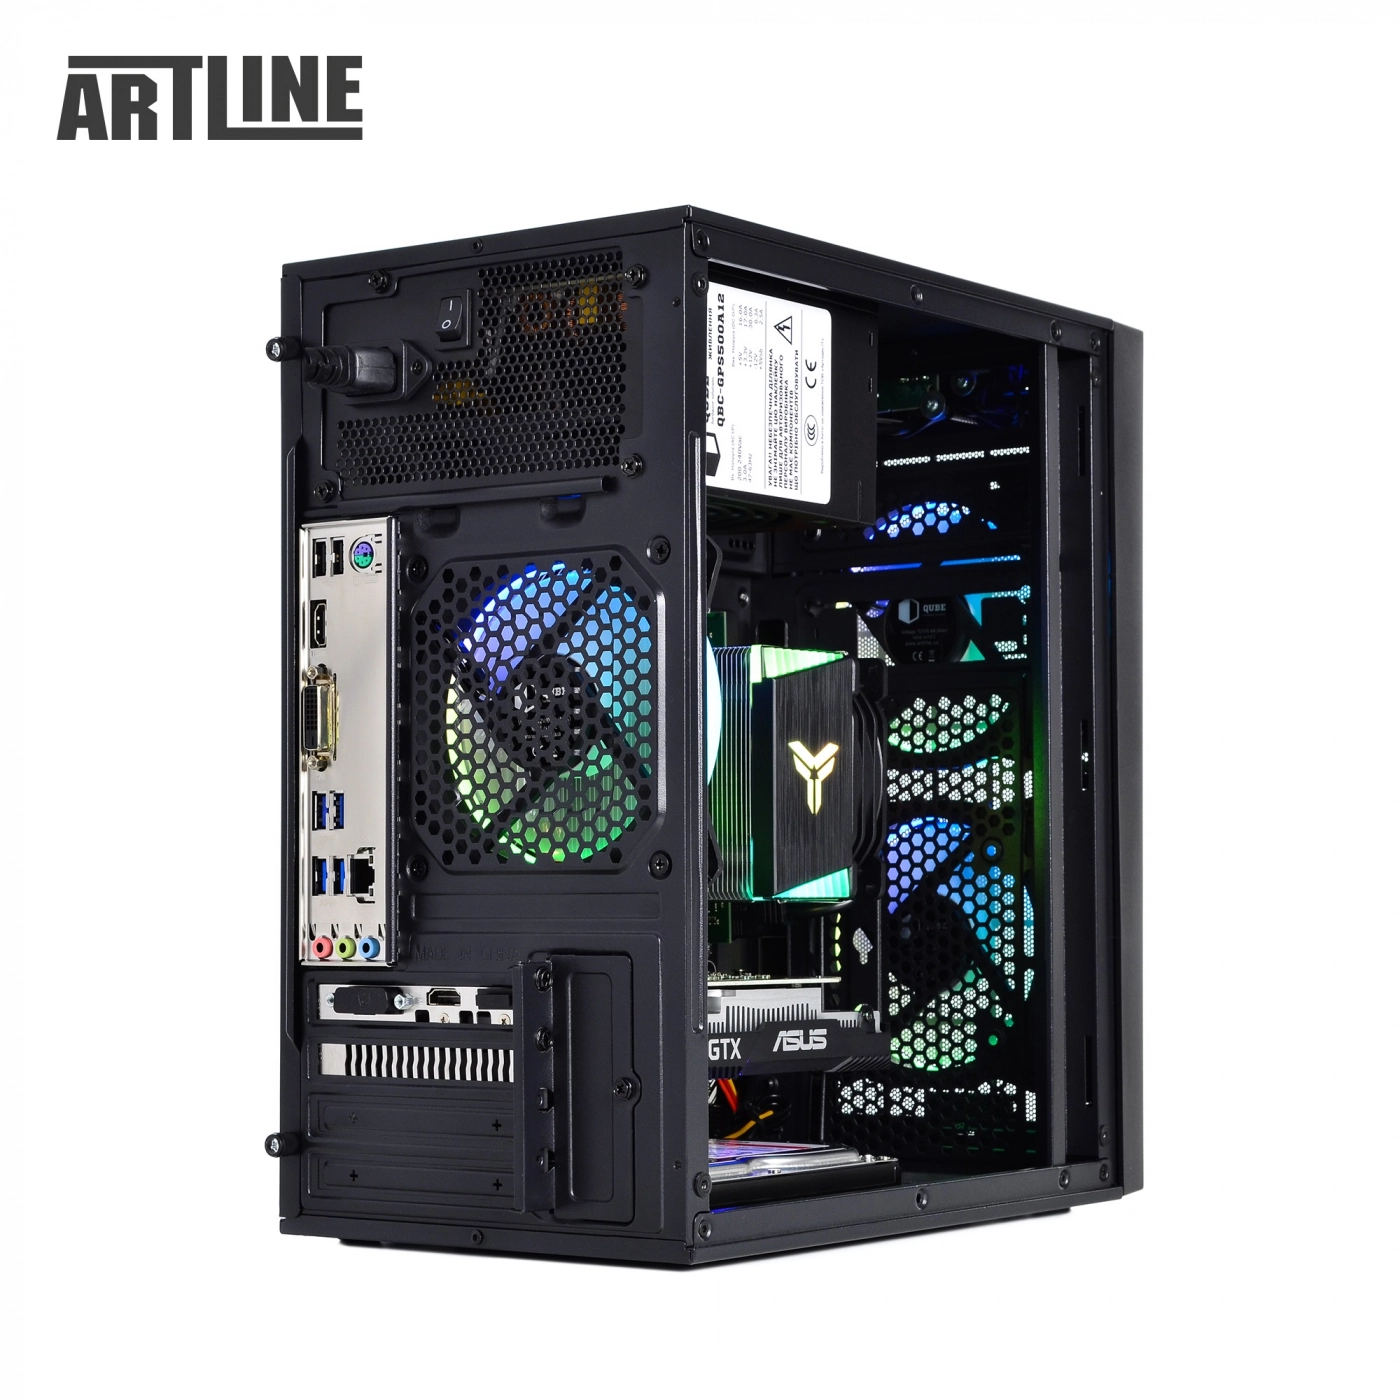 Купить Компьютер ARTLINE Gaming X42v01 - фото 12